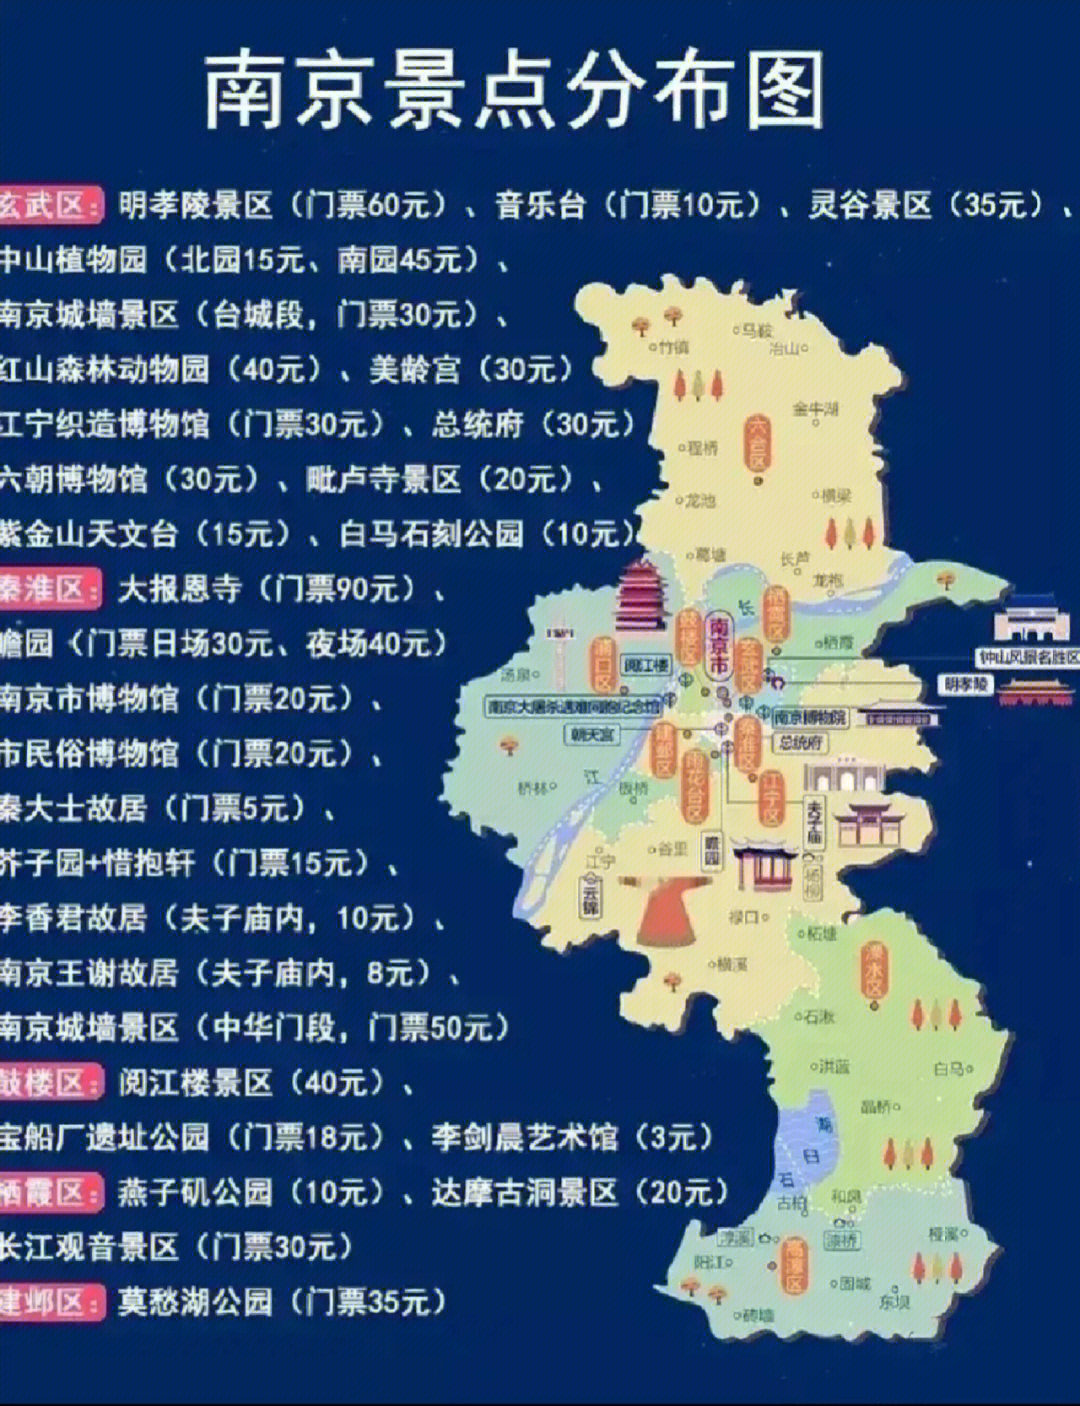 图片里分布着南京各区的主要景点,南京